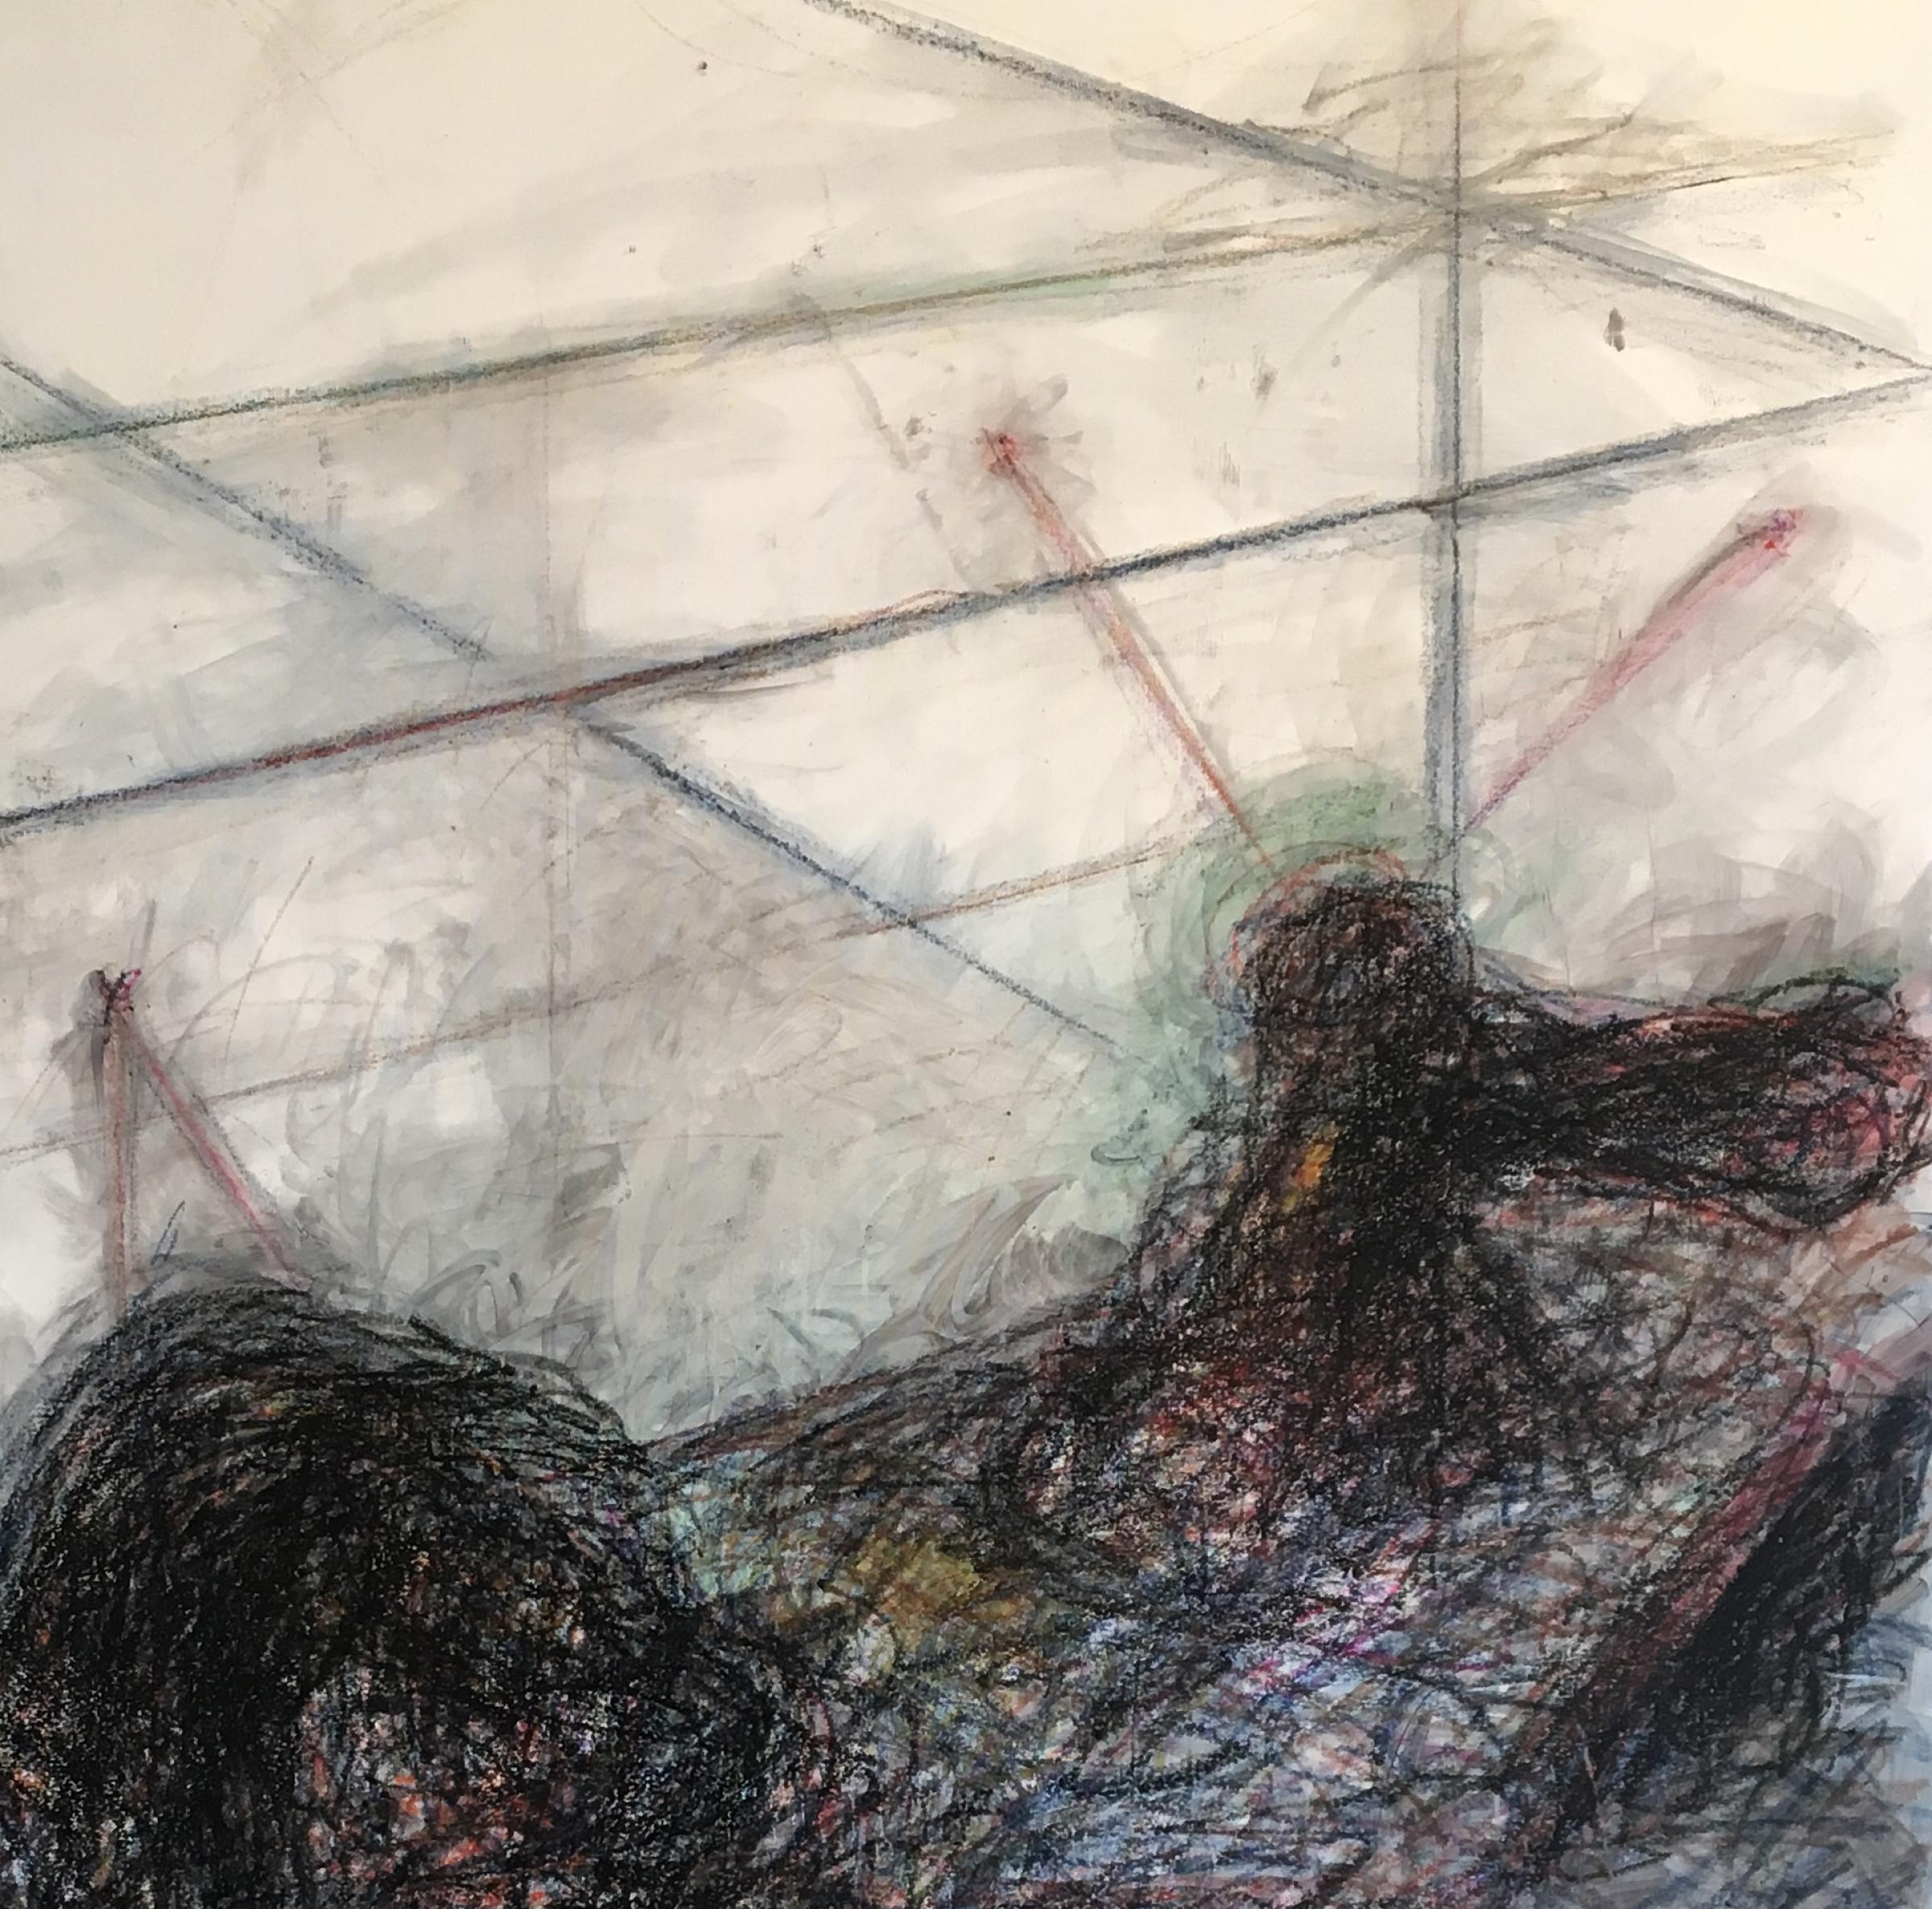 Ohne Titel 06 - Zeitgenössisch, Abstrakte Zeichnung auf Leinwand, Organisch, Minimalistisch (Grau), Abstract Painting, von Zsolt Berszán